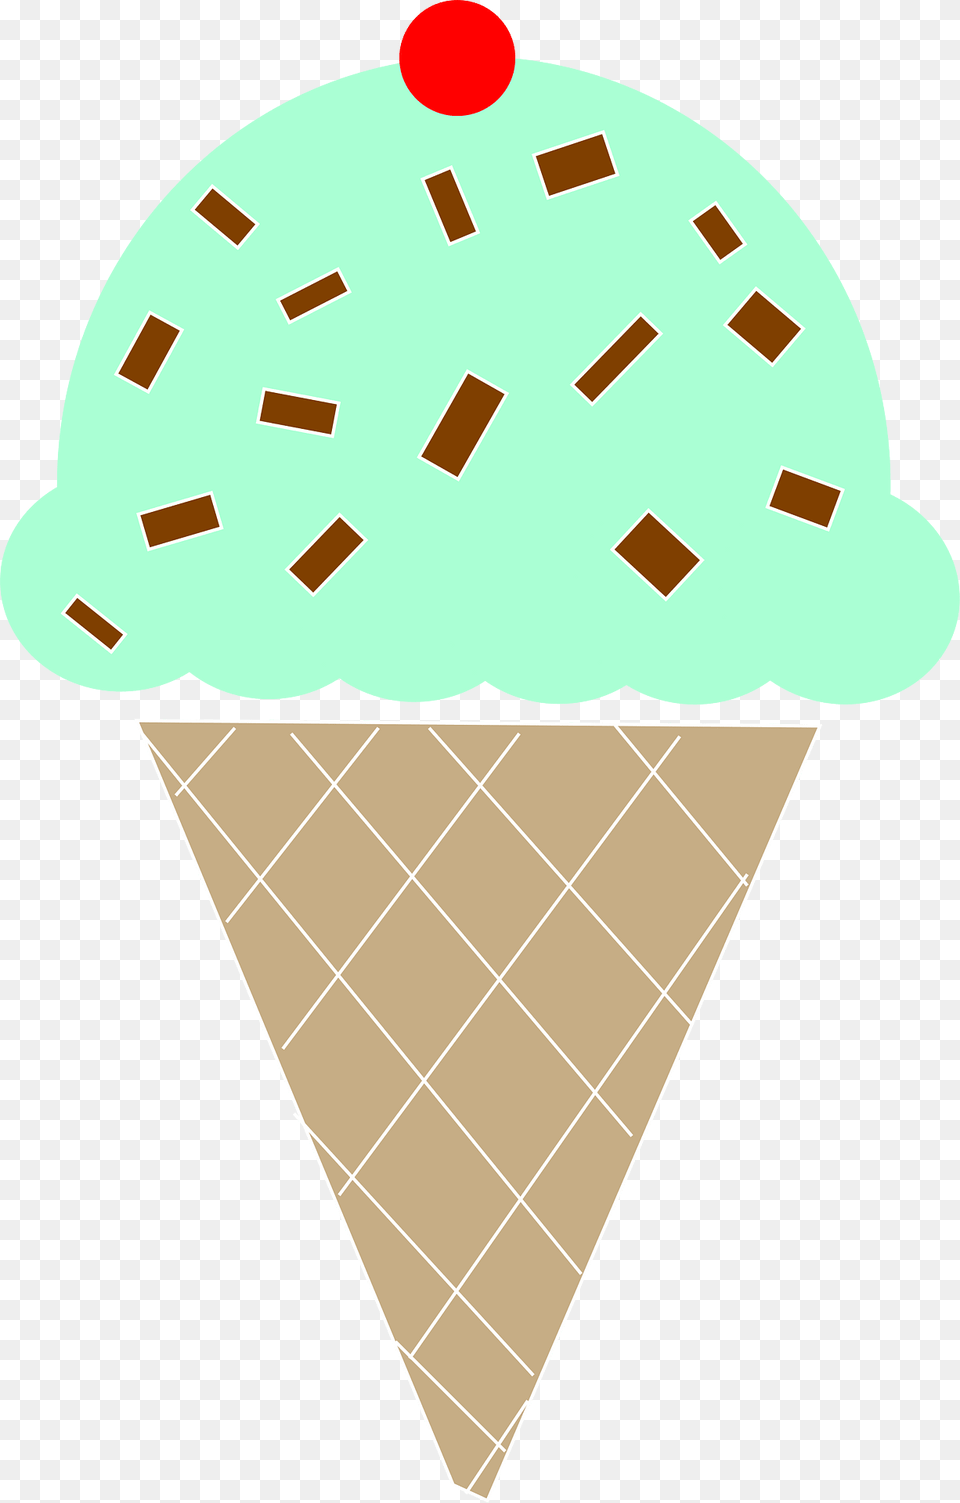 Ice Cream Cone Clipart, Dessert, Food, Ice Cream Png